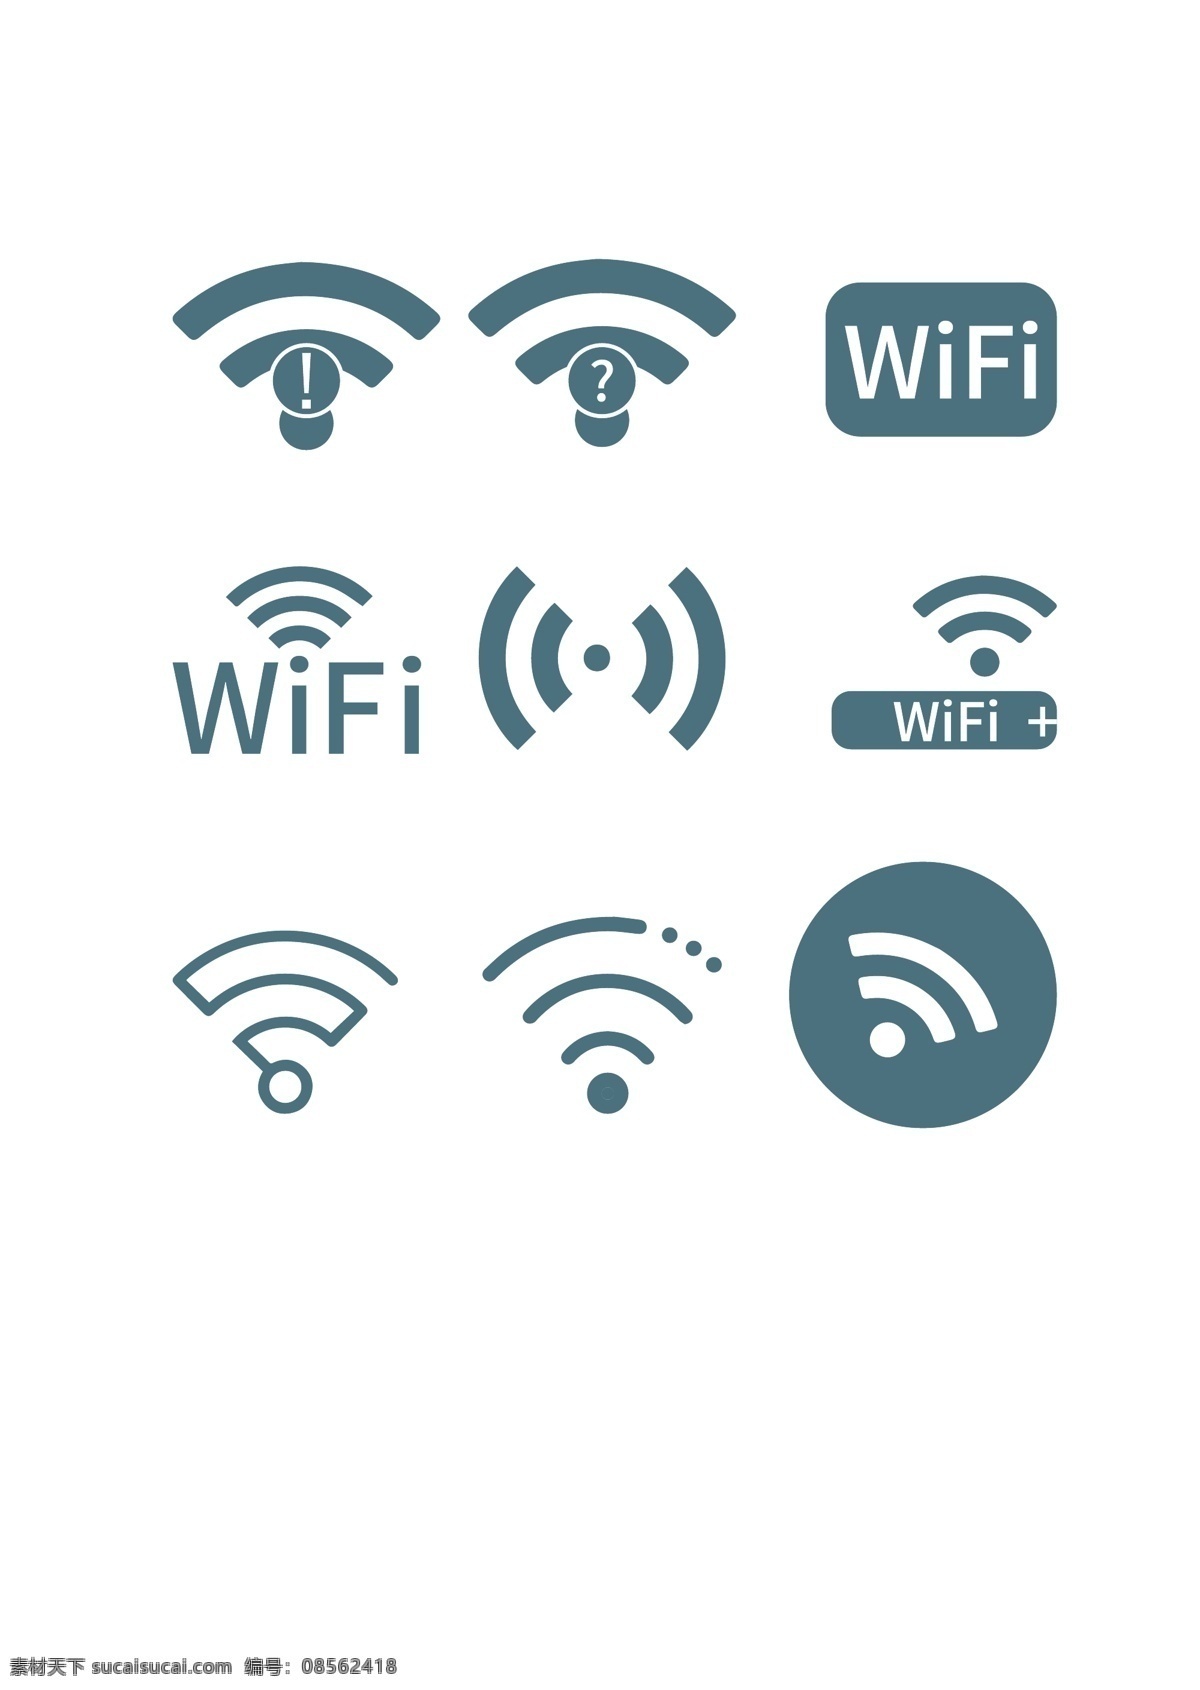 vi 导 视 系统 wifi 标识 导视 标志图标 公共标识标志